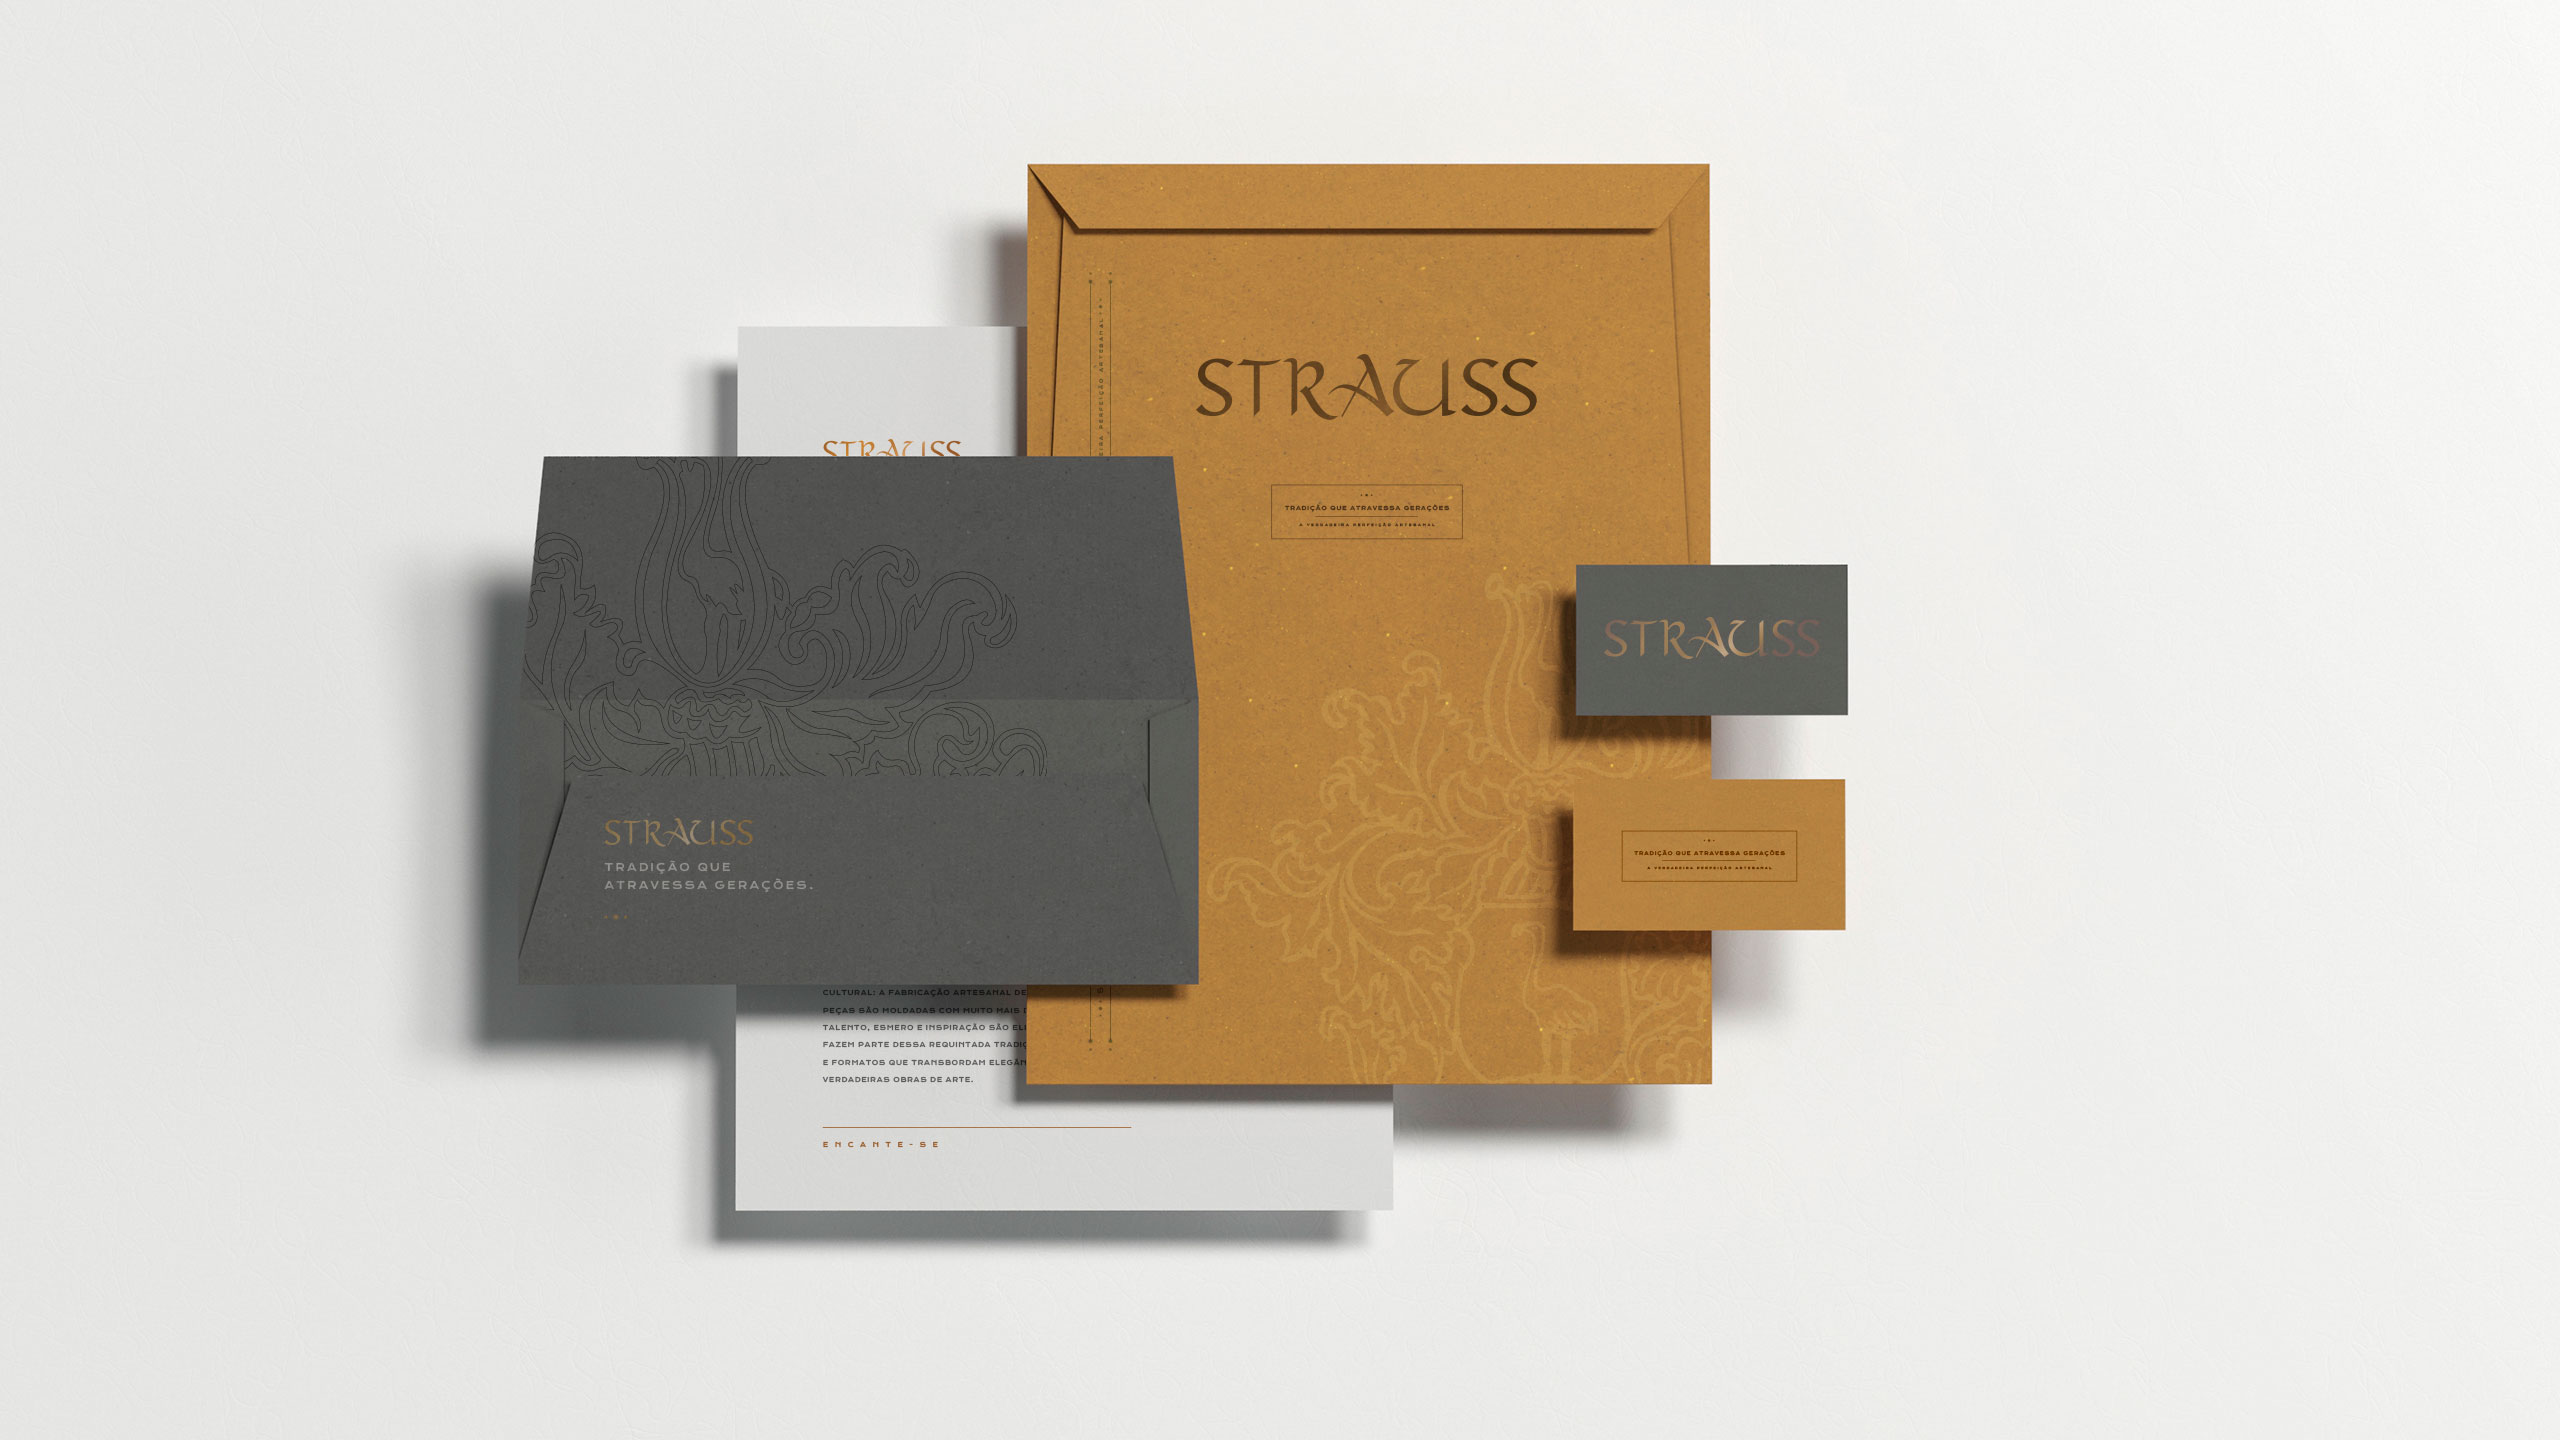 estudio de design carpintaria para Strauss imagem campanha